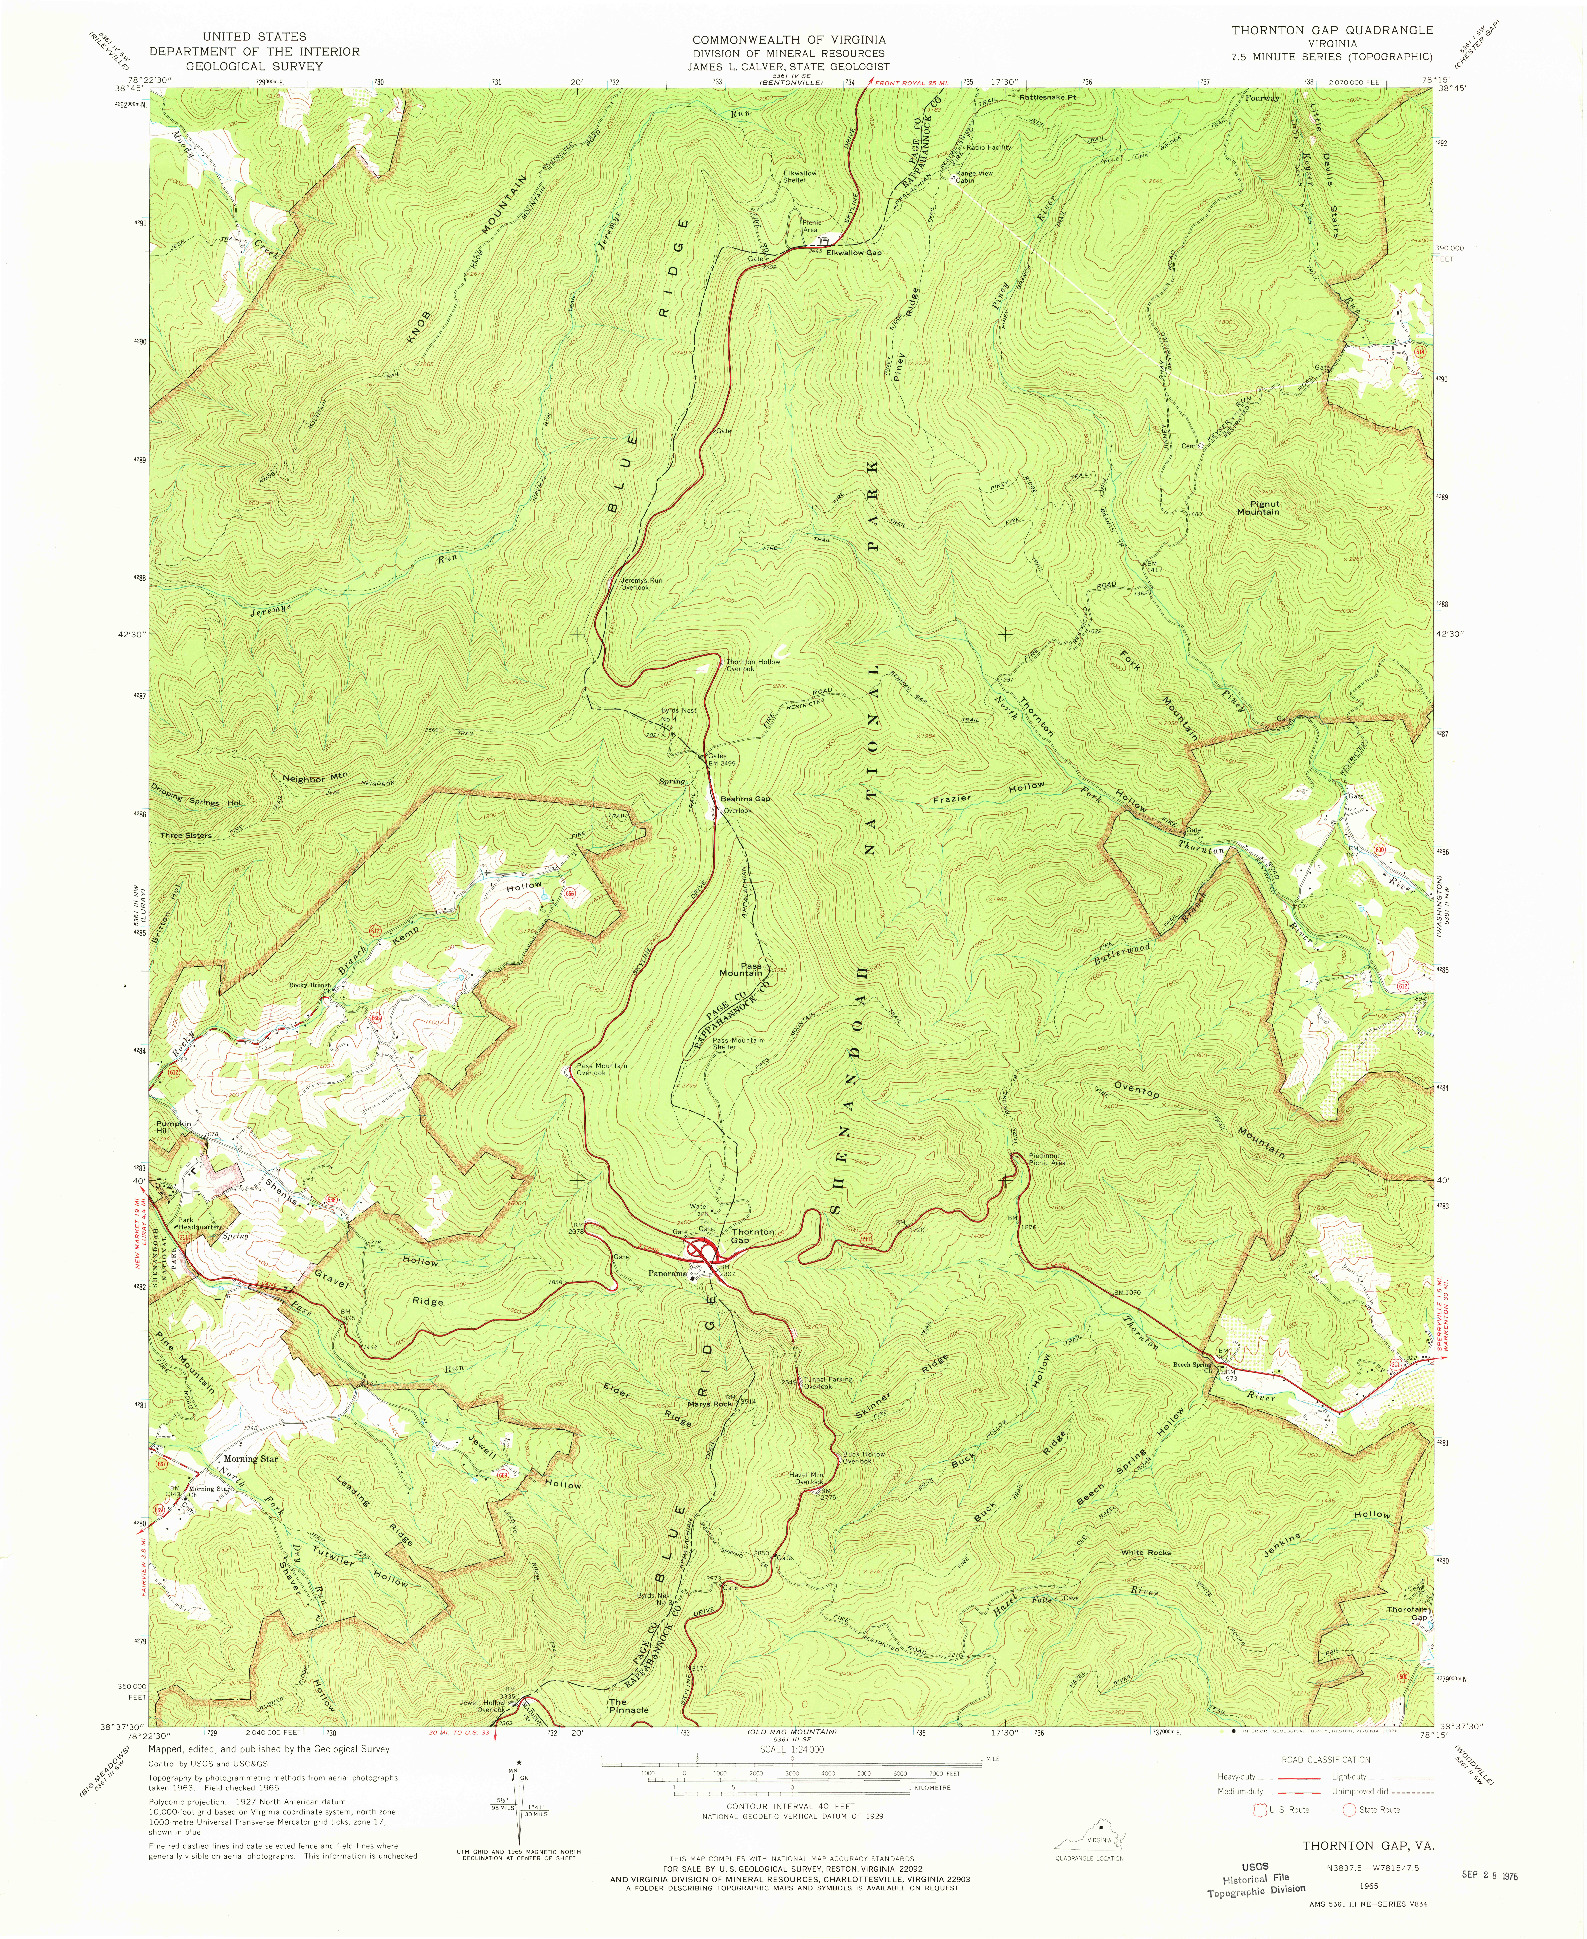 USGS 1:24000-SCALE QUADRANGLE FOR THORNTON GAP, VA 1965